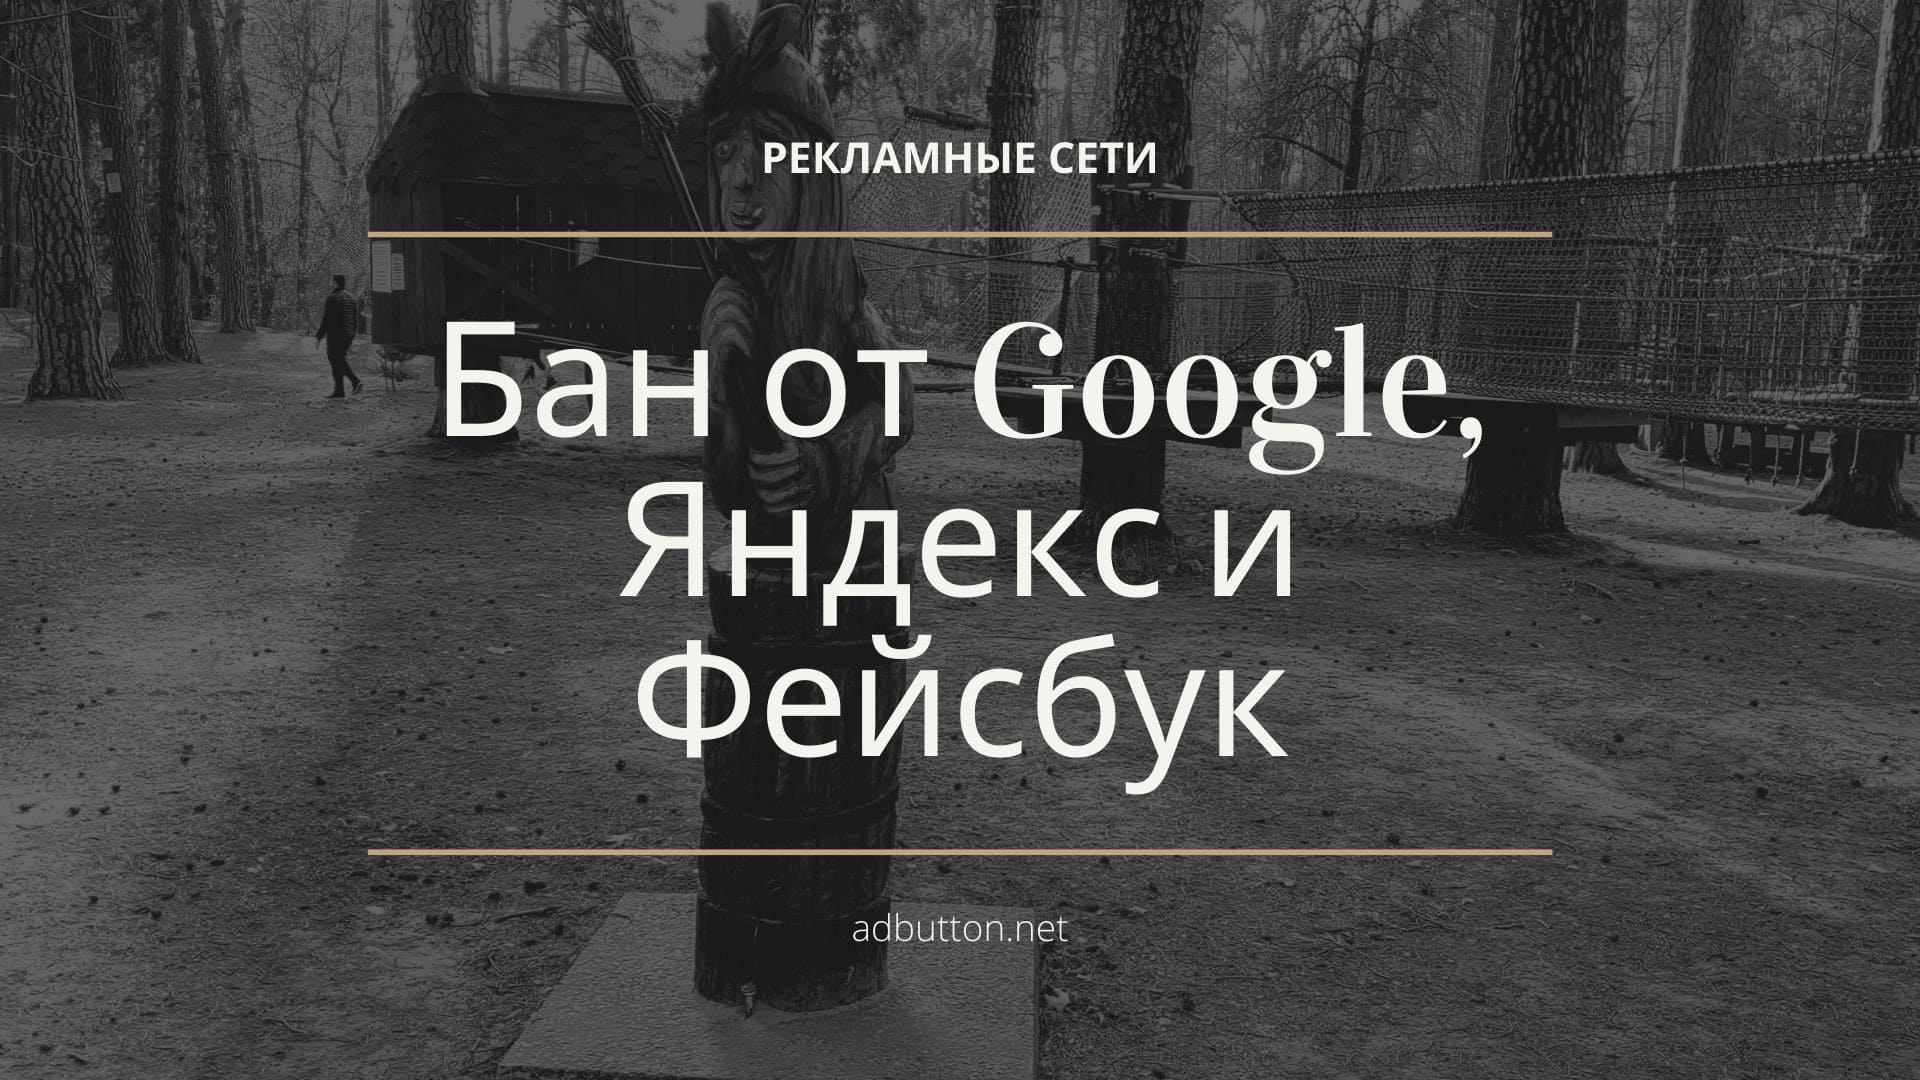 За что рекламодатели могут получить бан от Google, Яндекс и Фейсбук